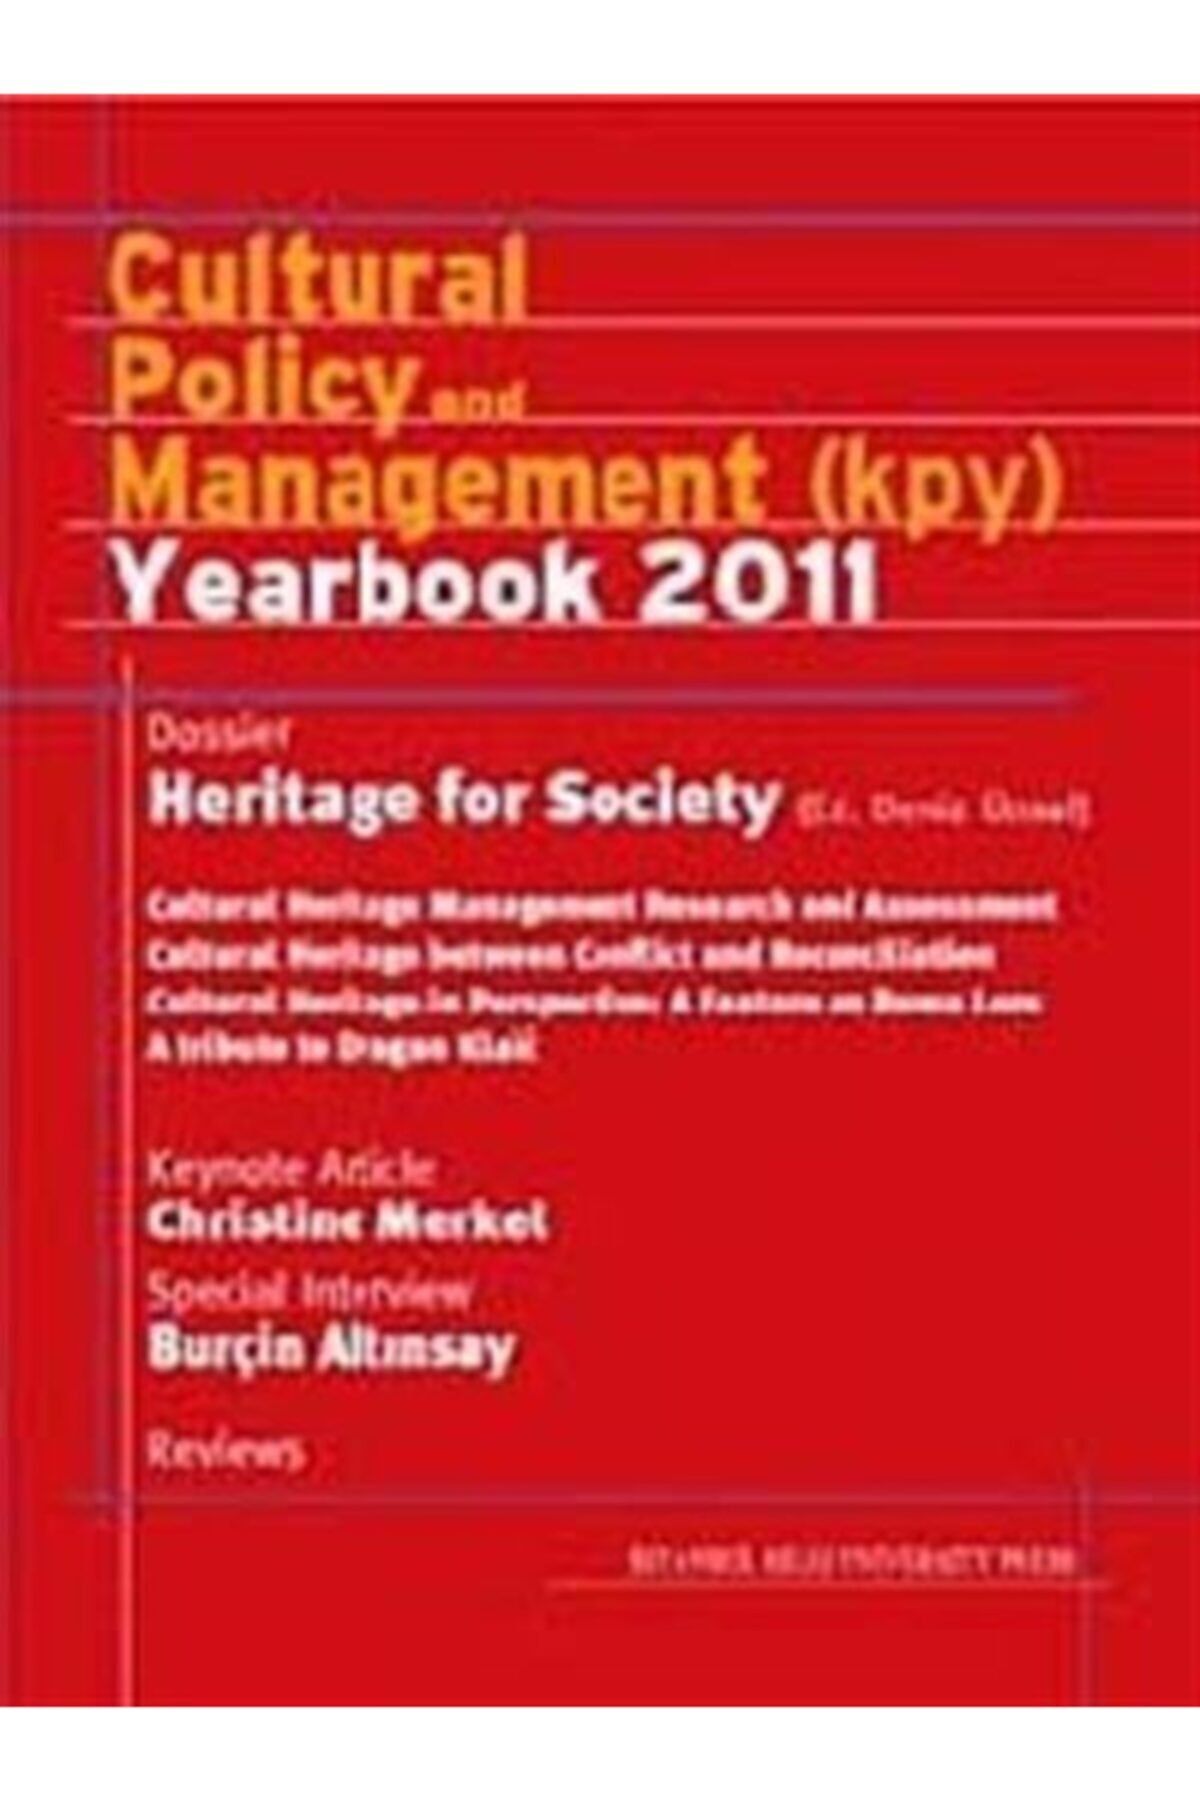 İstanbul Bilgi Üniversitesi Yayınları Cultural Policy And Management (kpy) Yearbook 2011